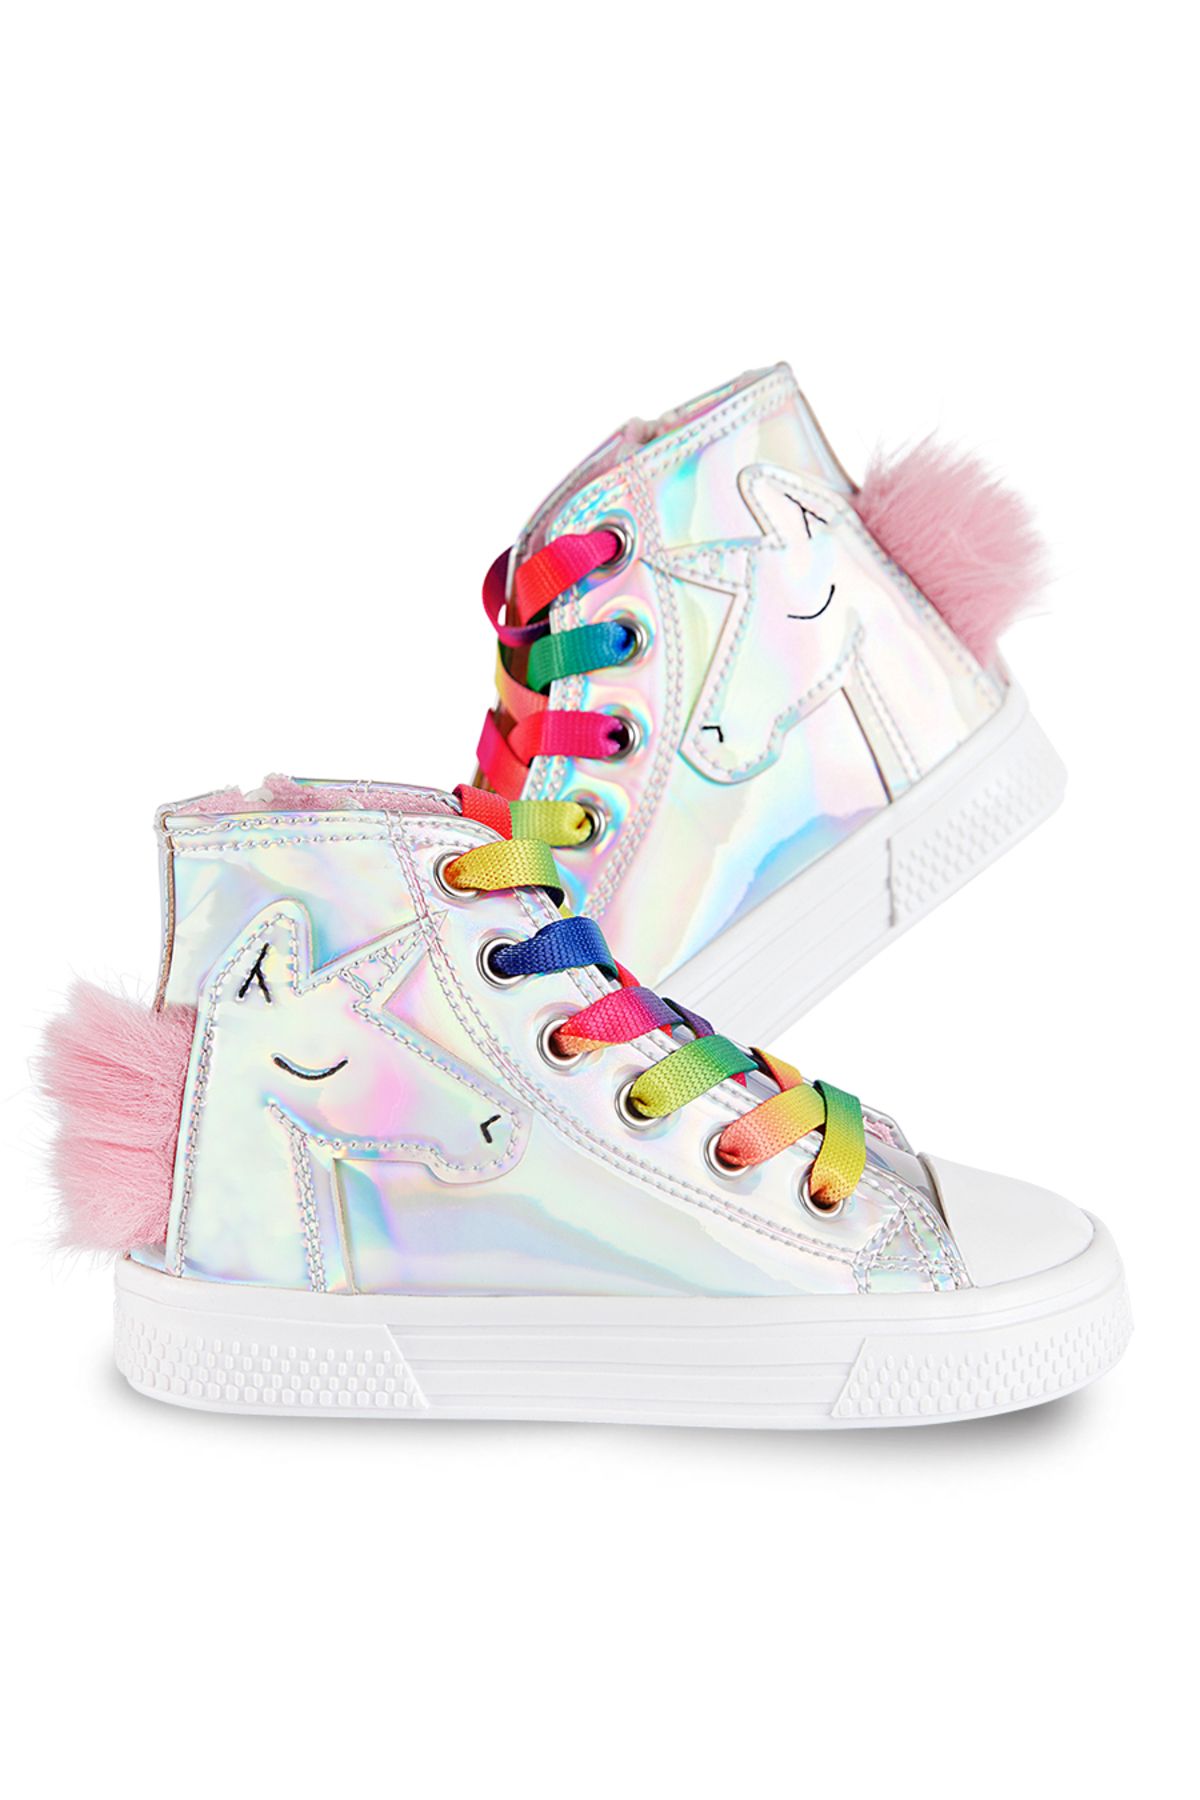 Denokids Unicorn Hologramlı Kız Sneakers